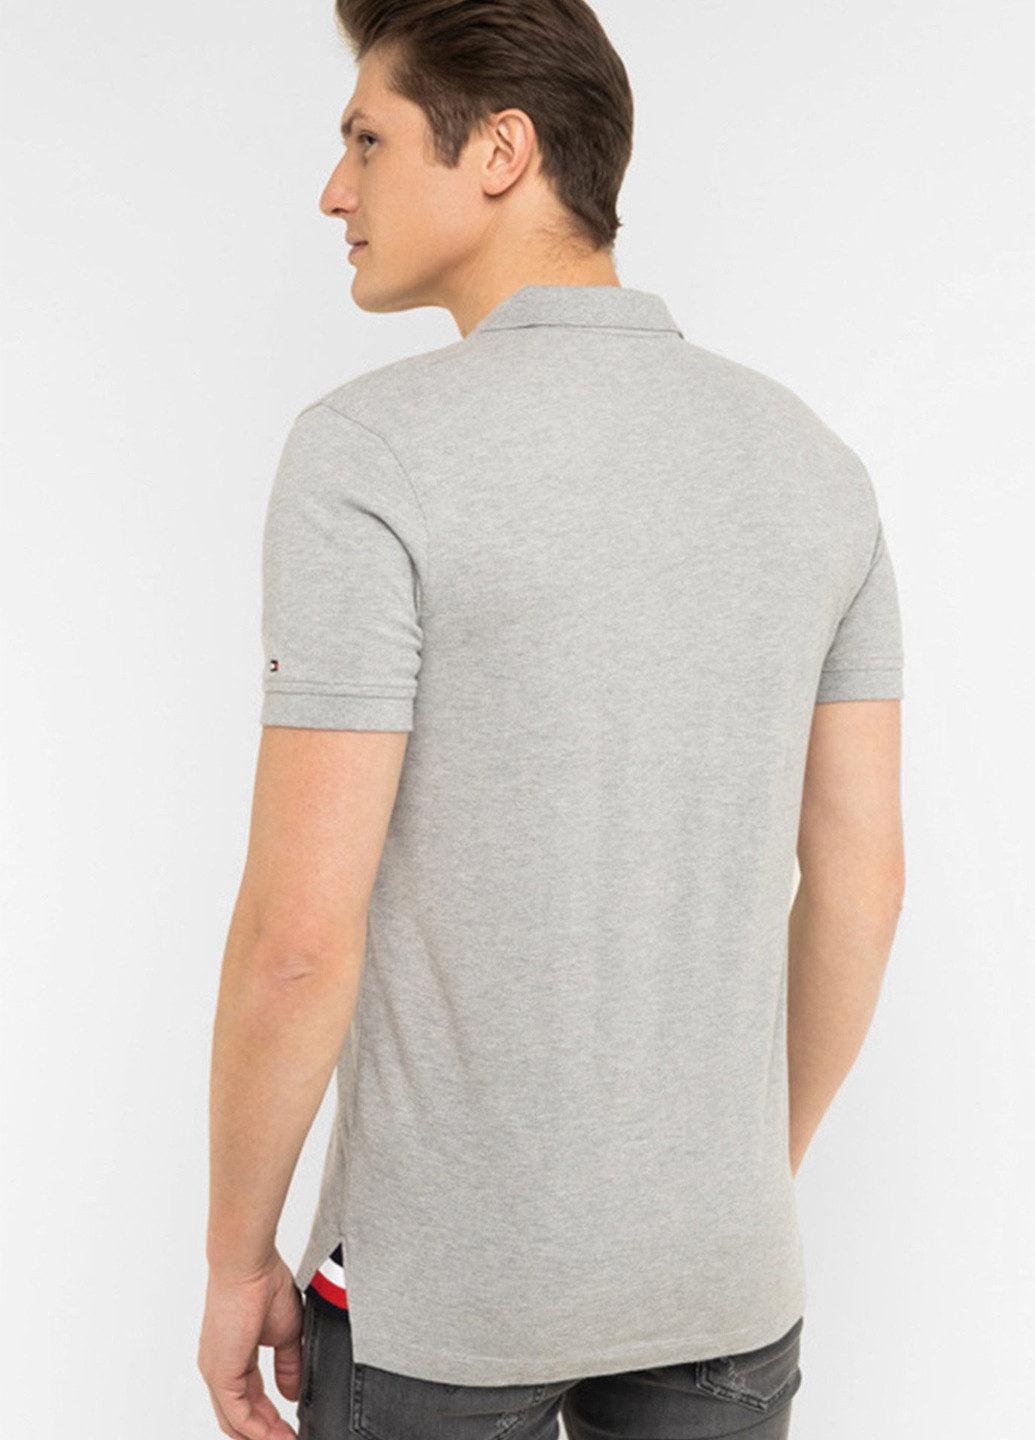 Светло-серая футболка-поло для мужчин Tommy Hilfiger с логотипом